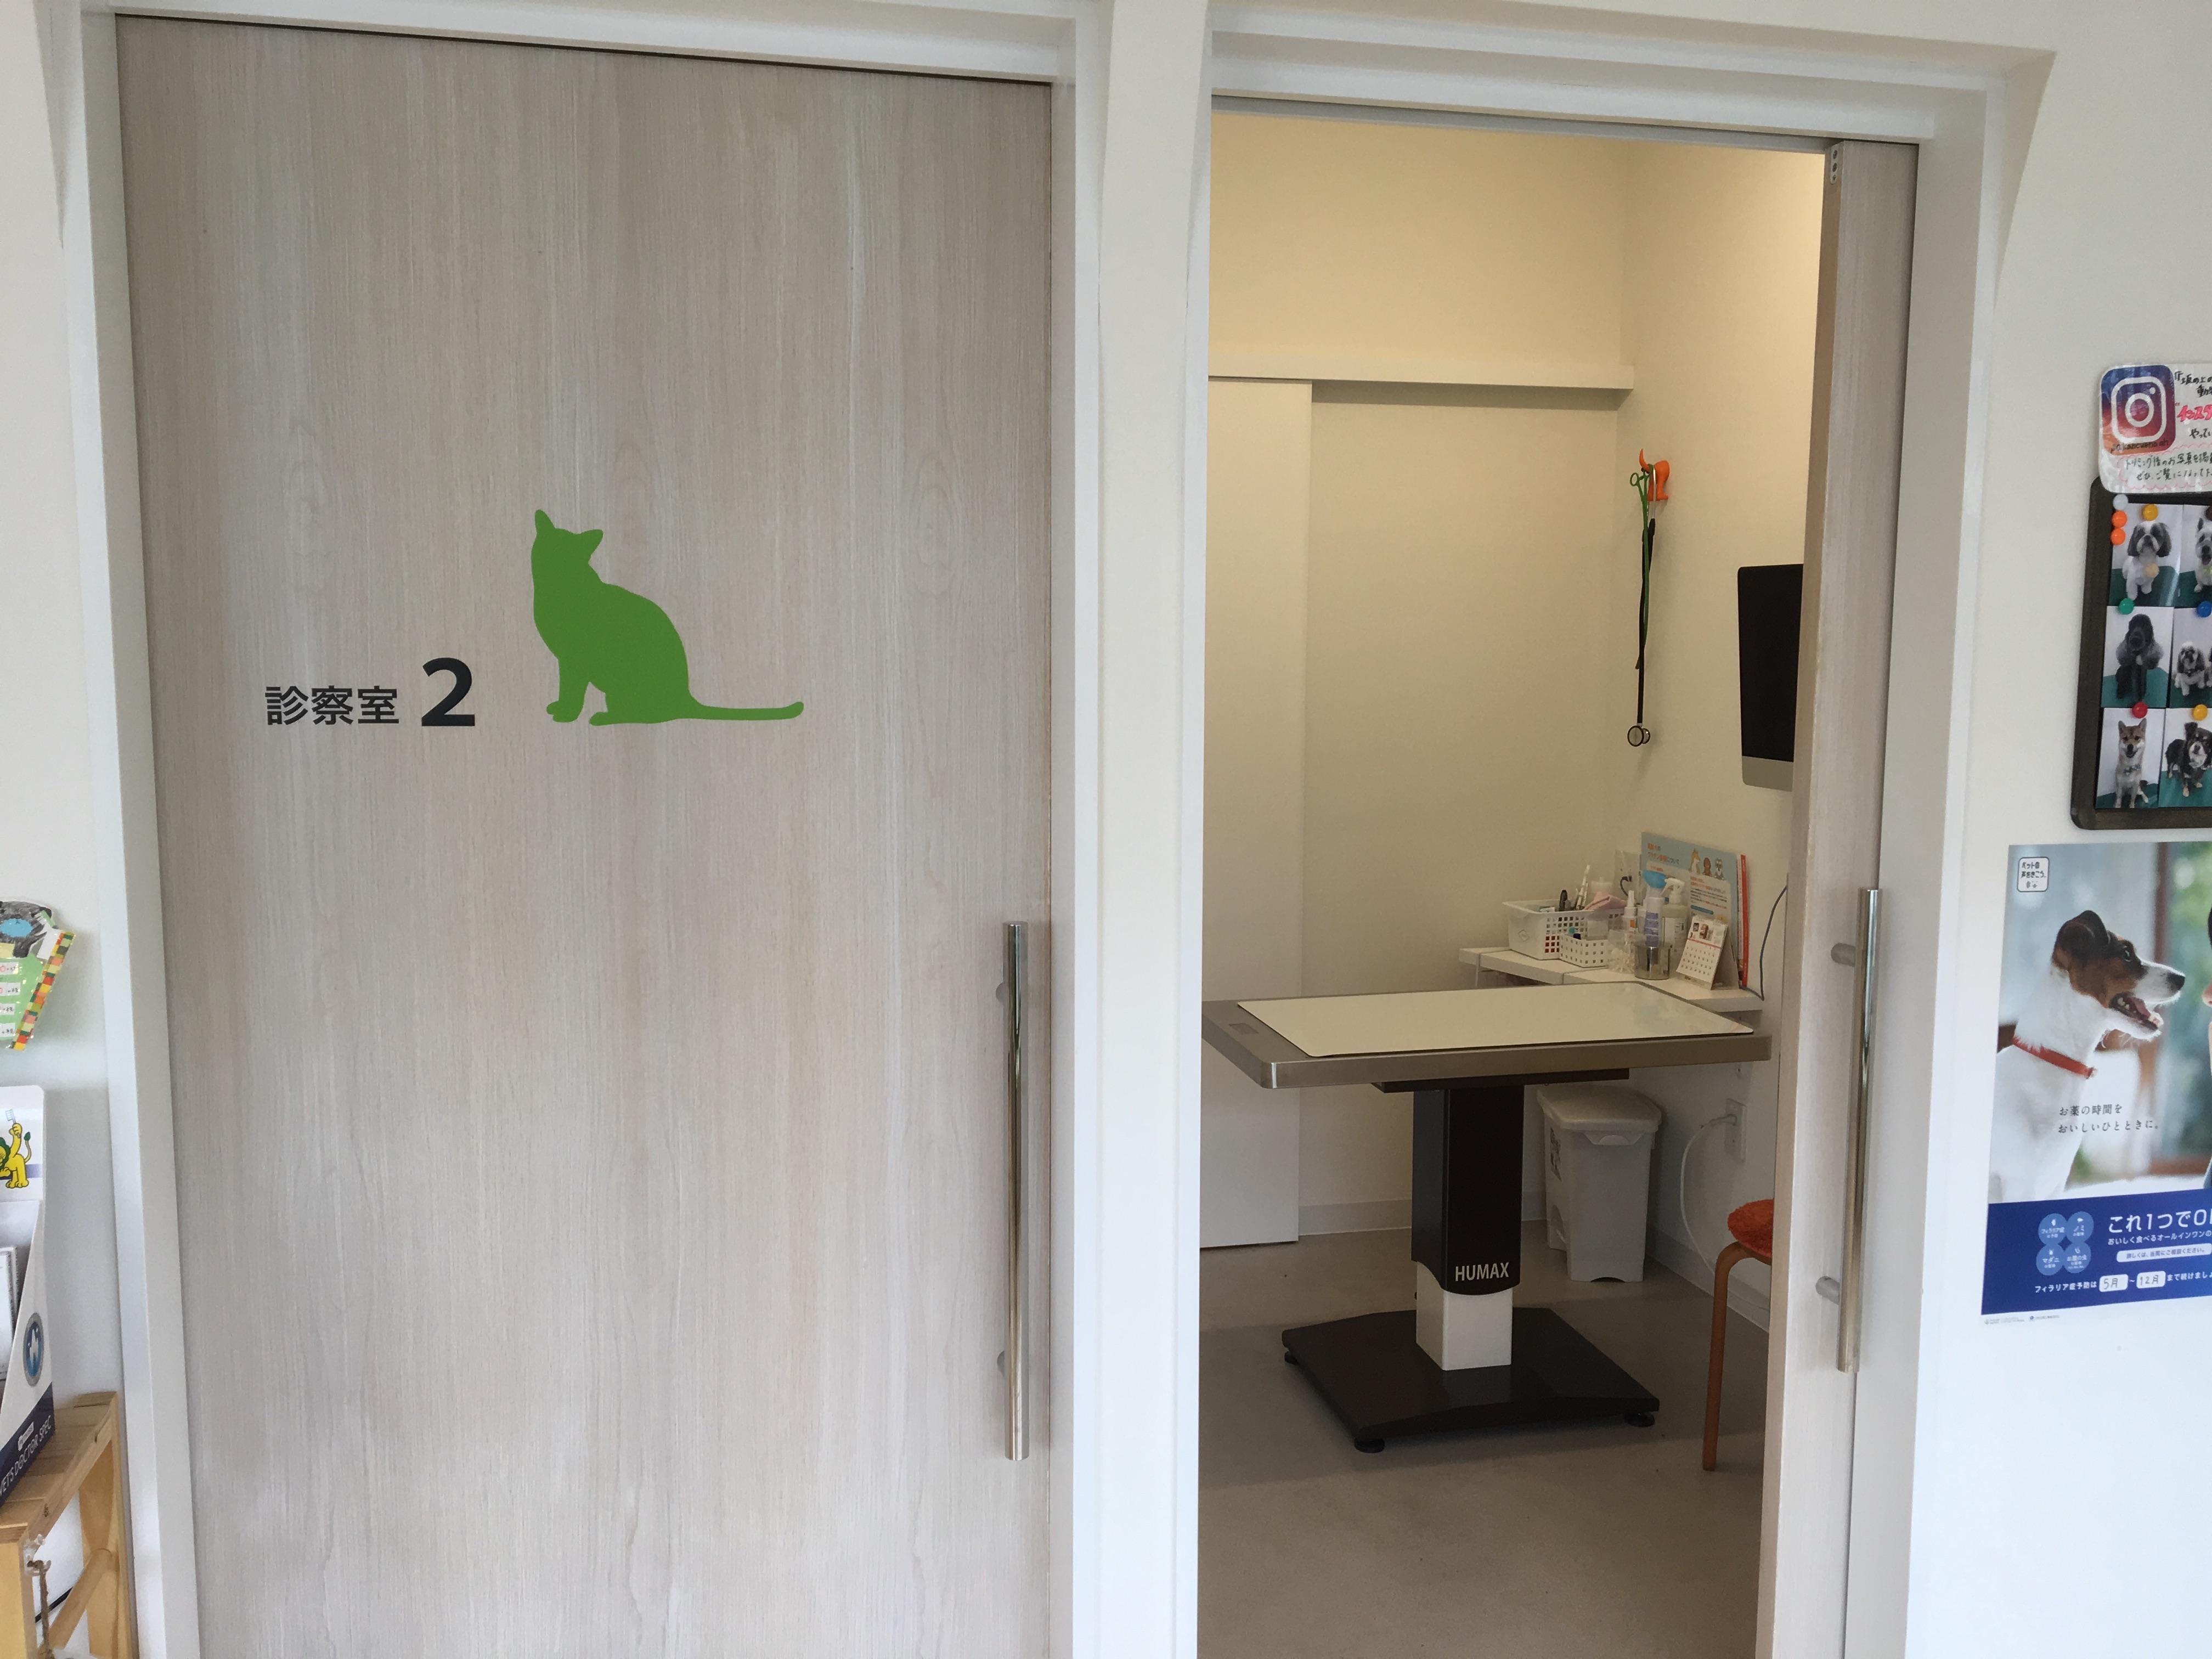 診察室は犬と猫で分かれています。